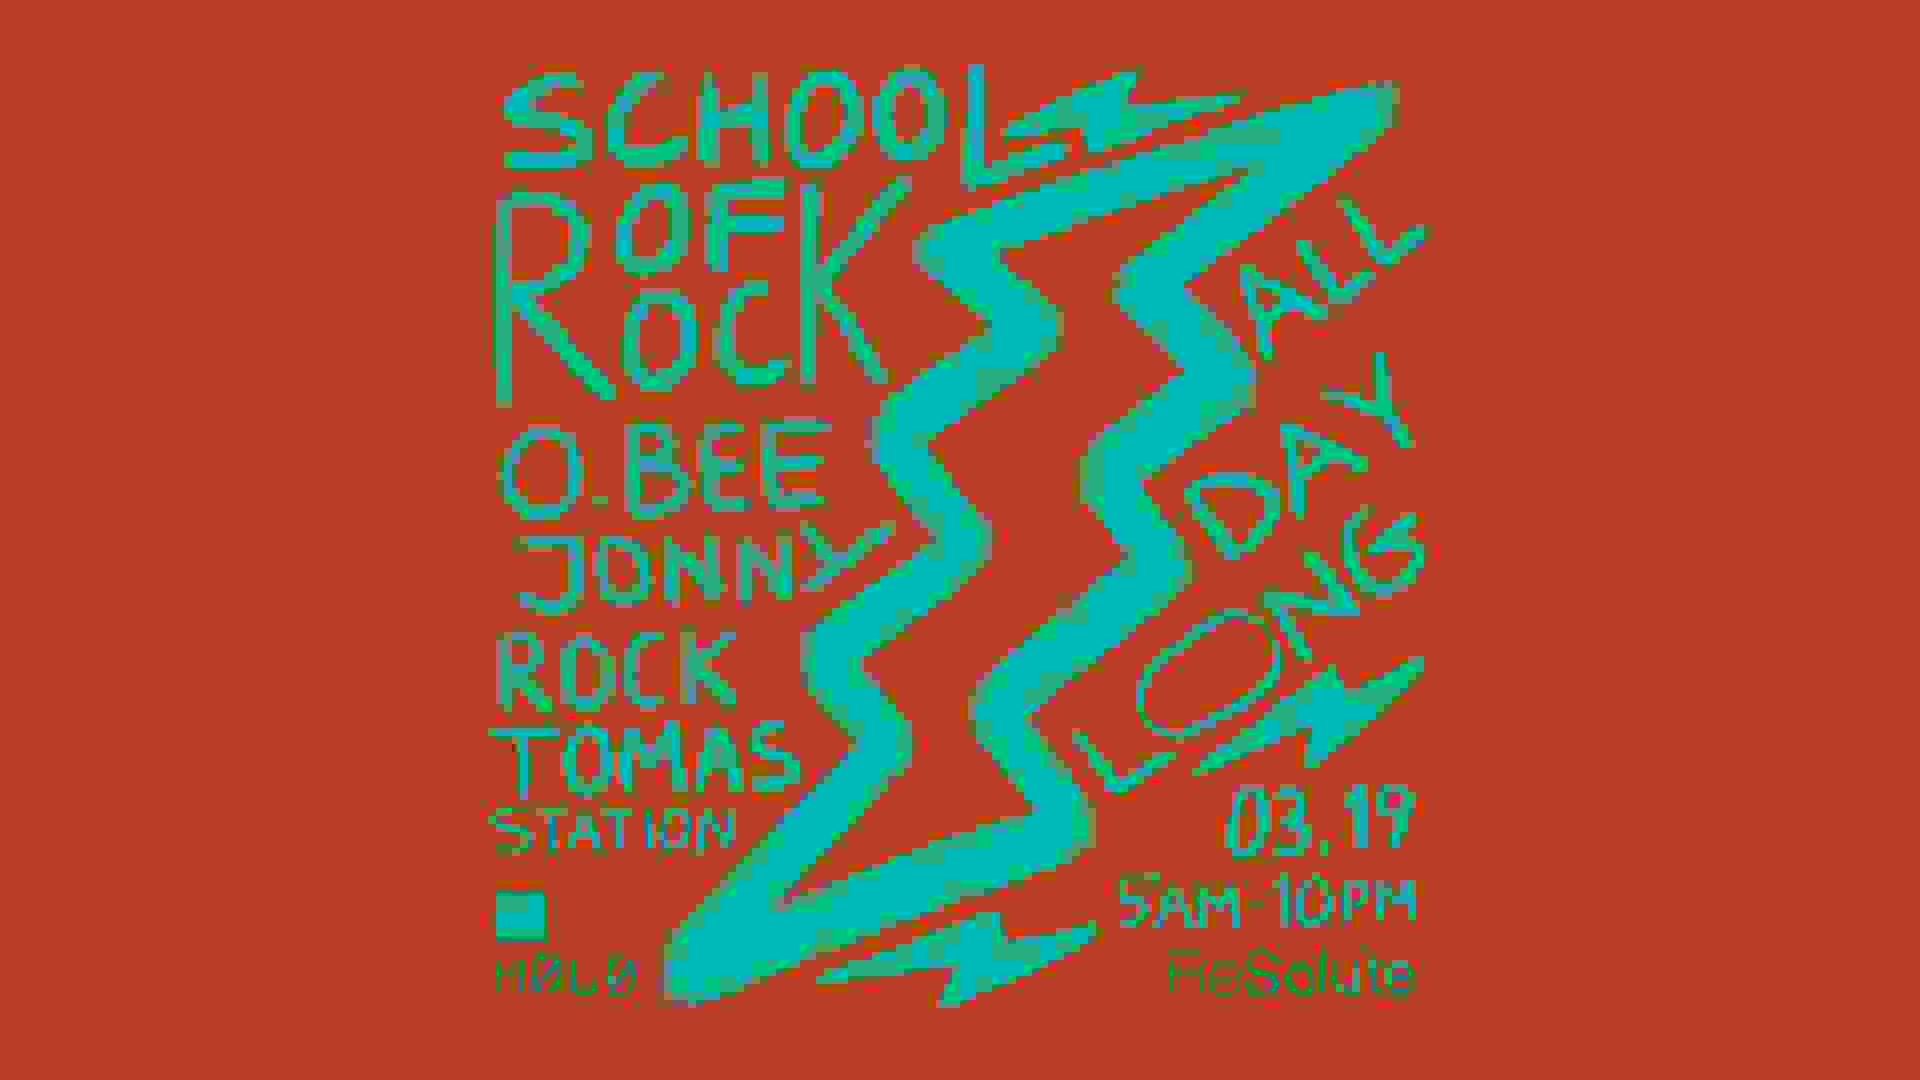 ReSolute School of Rock w/ O.BEE, Jonny Rock & Tomas Station